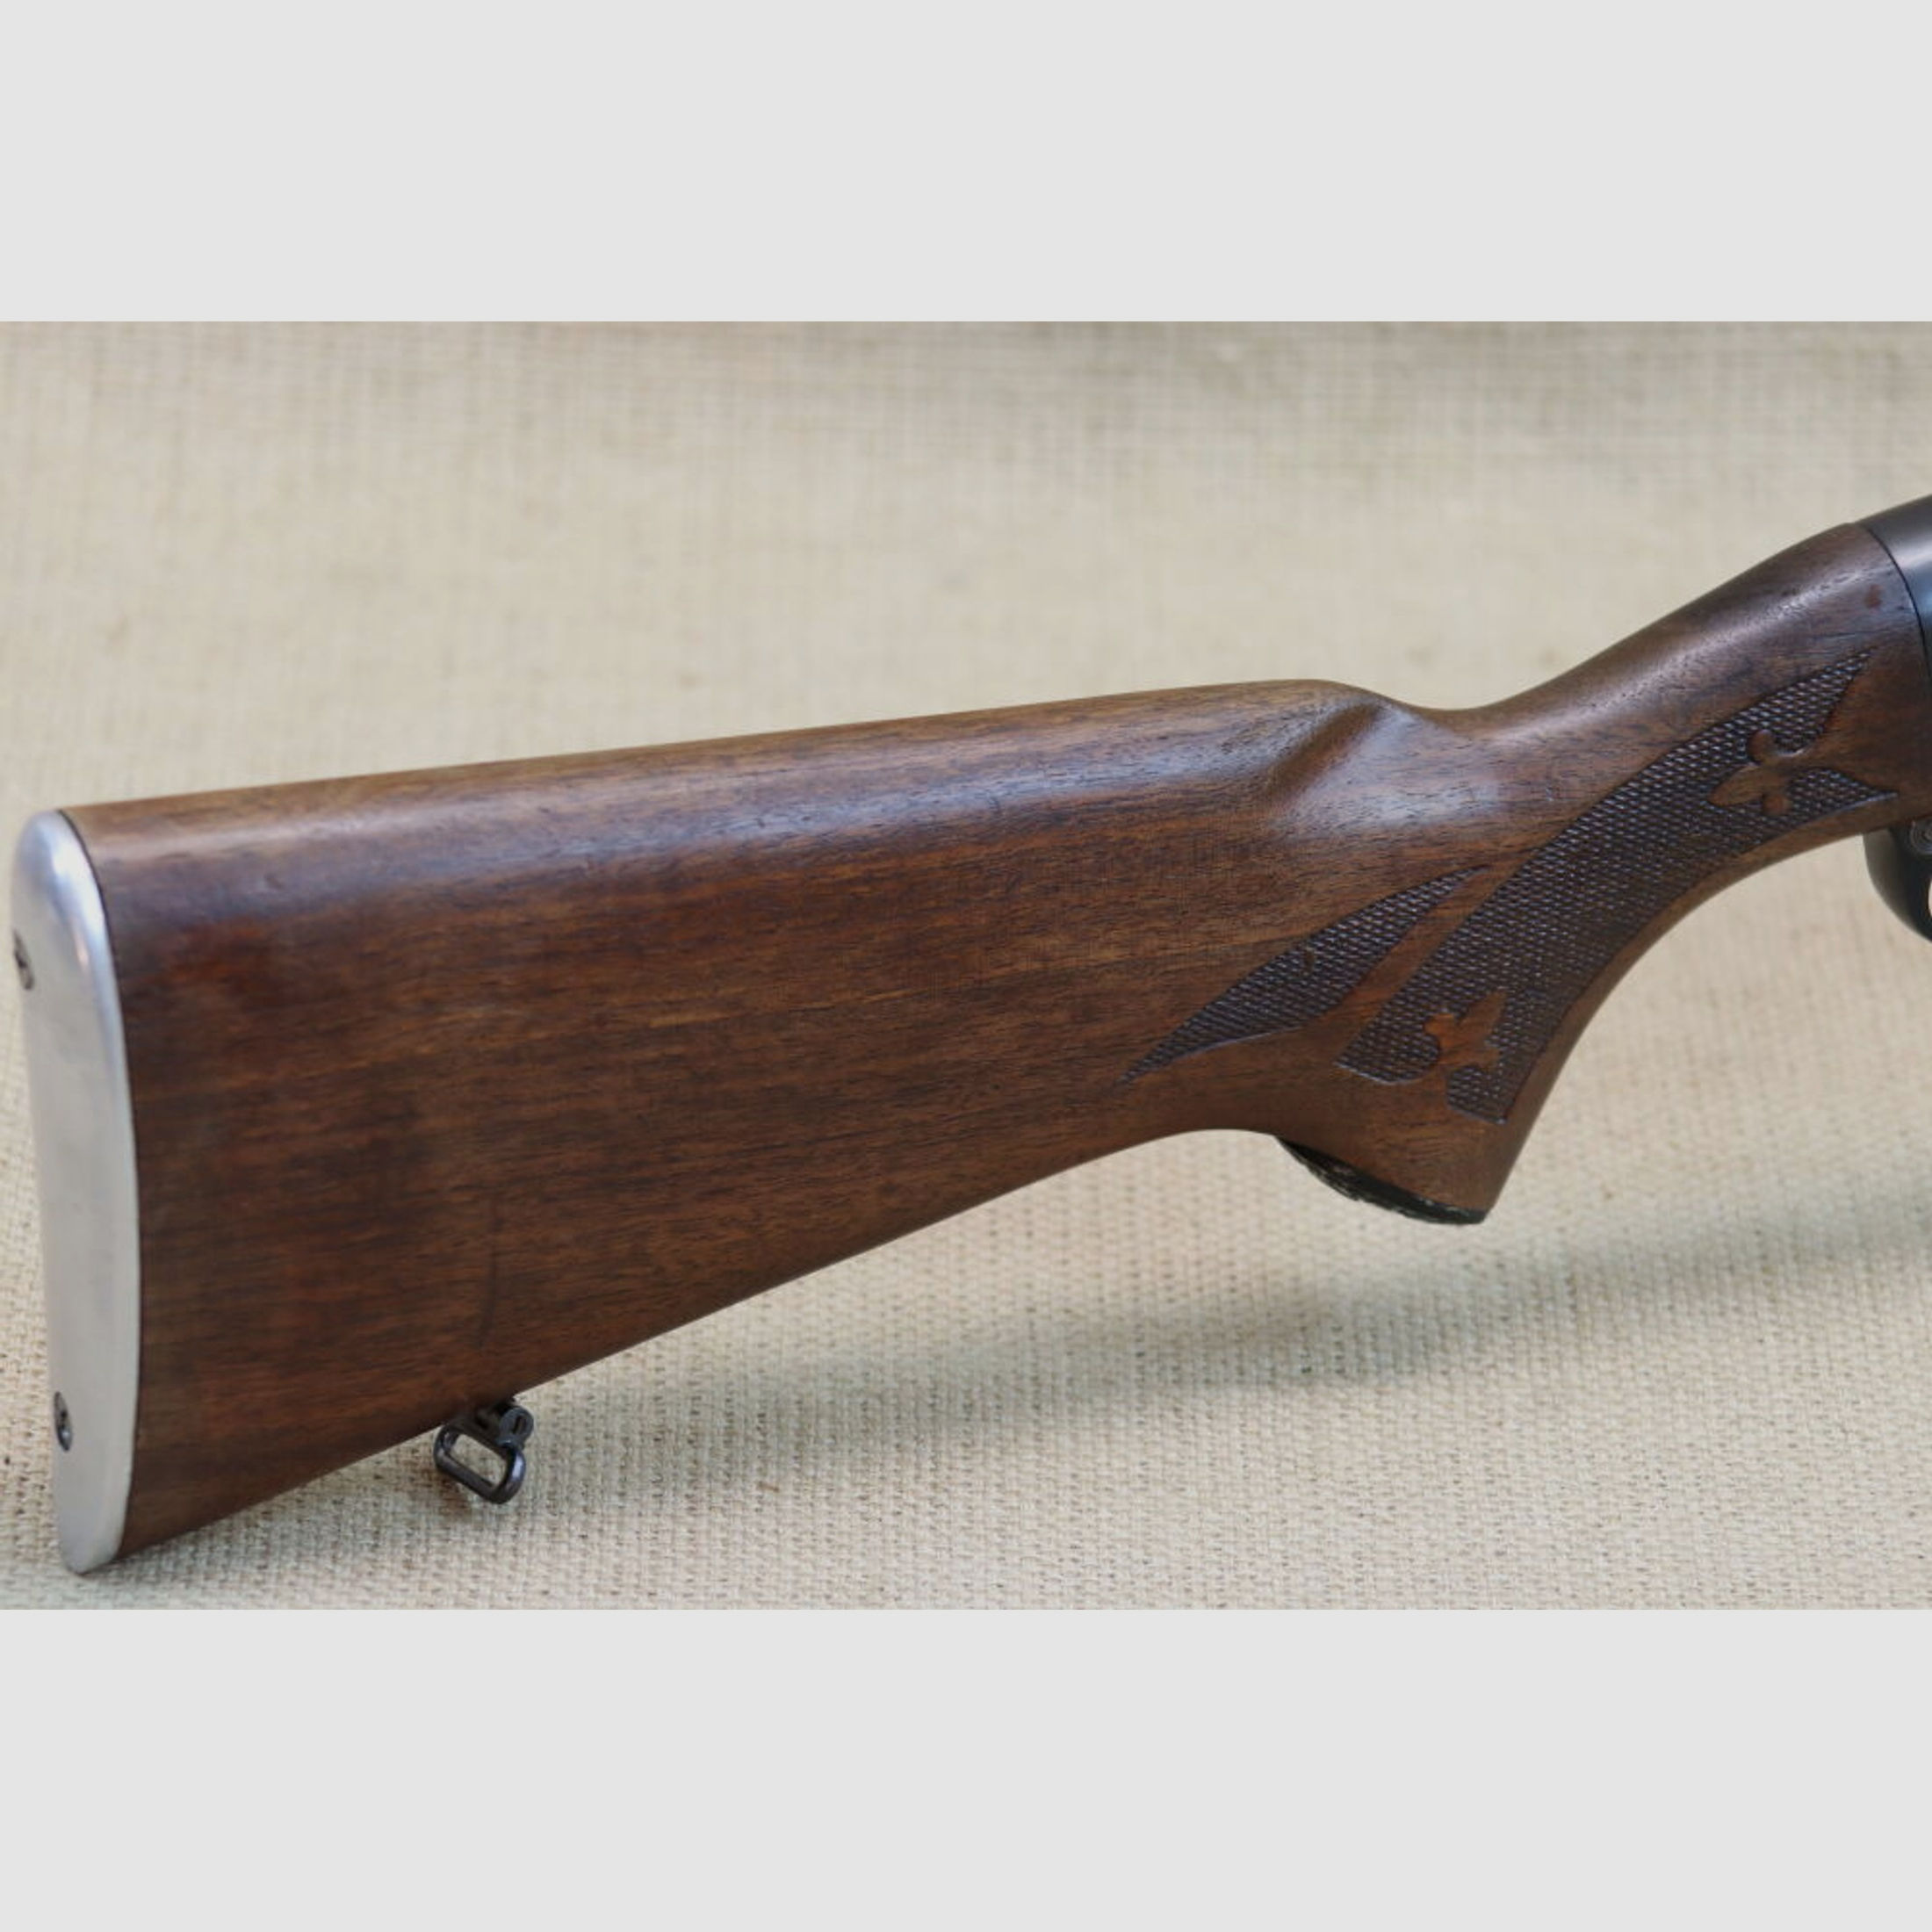 Halbautomatische Büchse Remington, Mod. Woodmaster 742, Kal. .30-06 Spring.